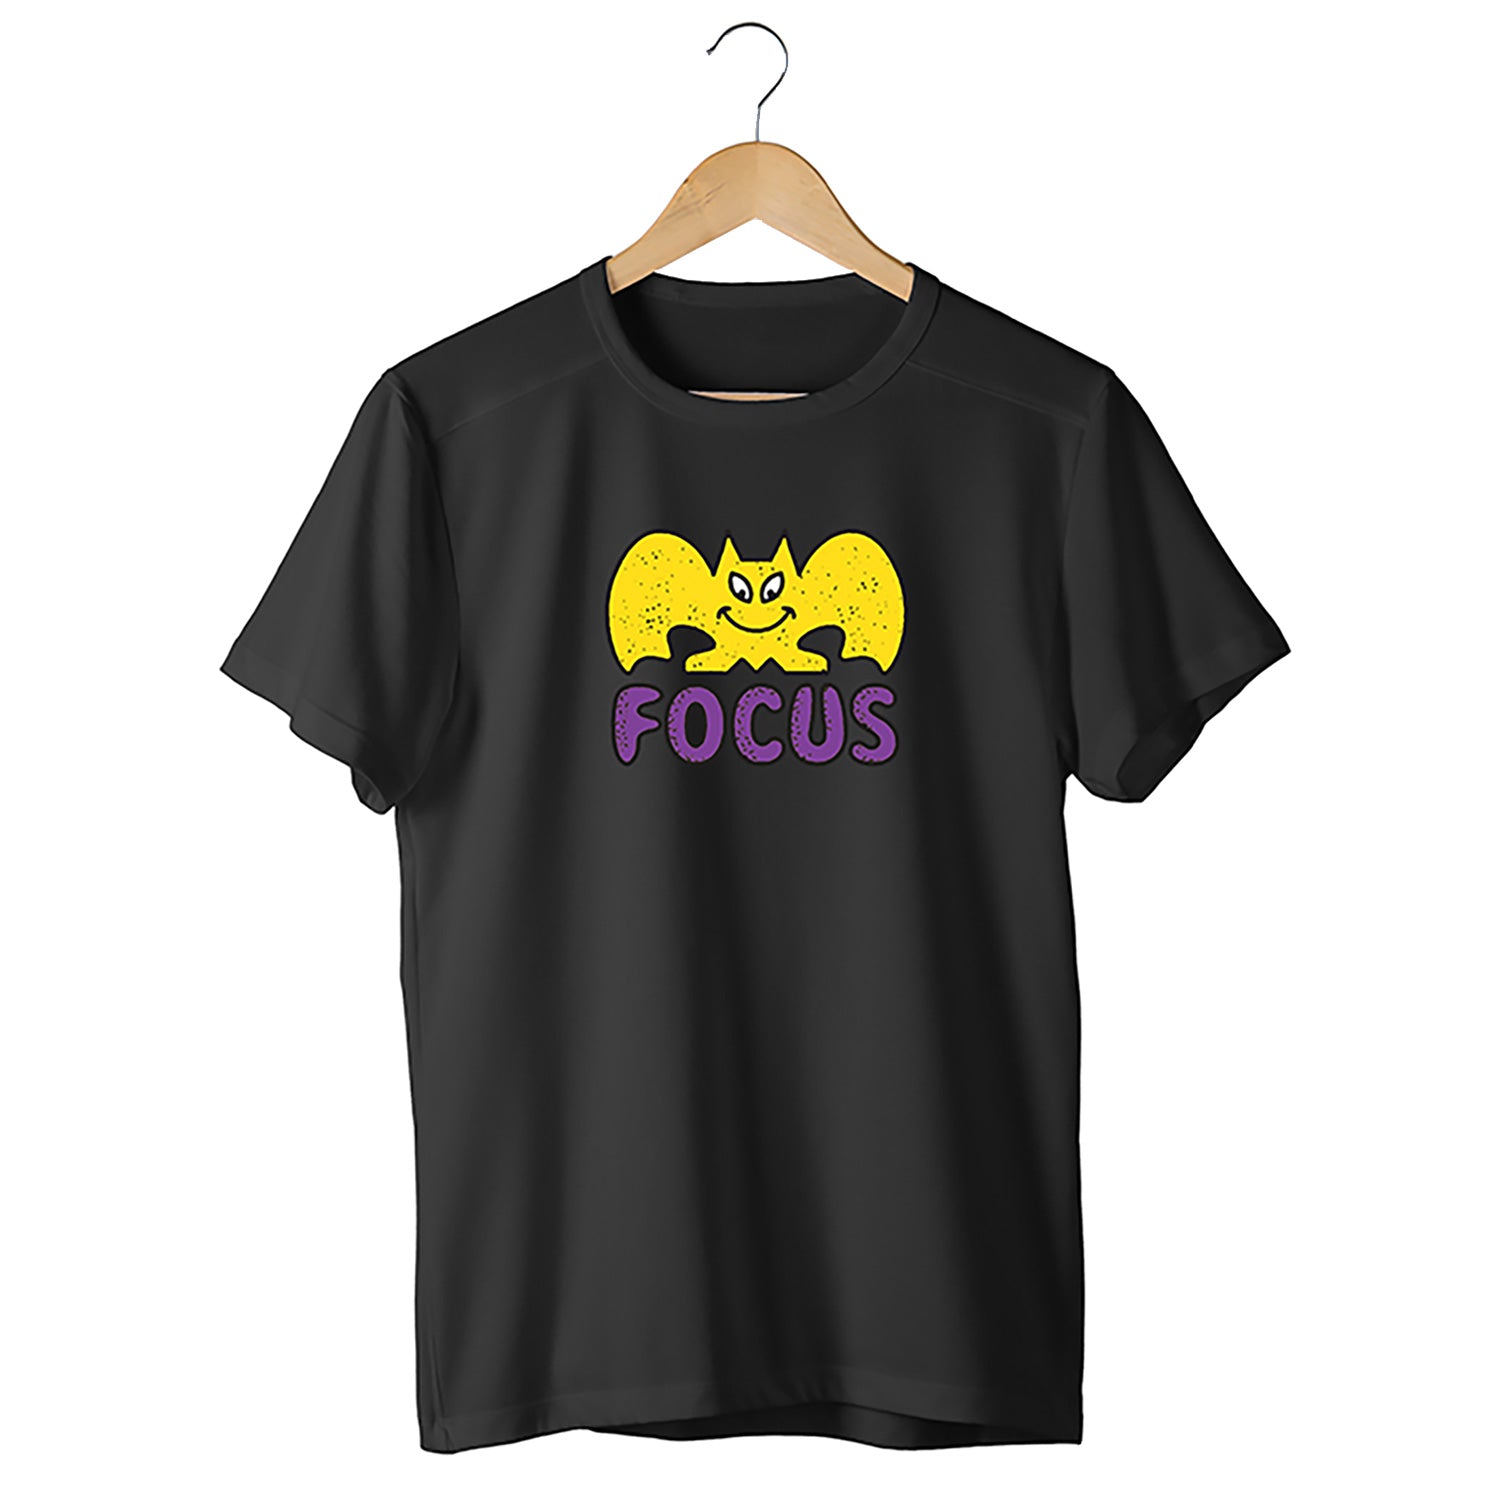 Focus Bat Logo T-shirt - Black